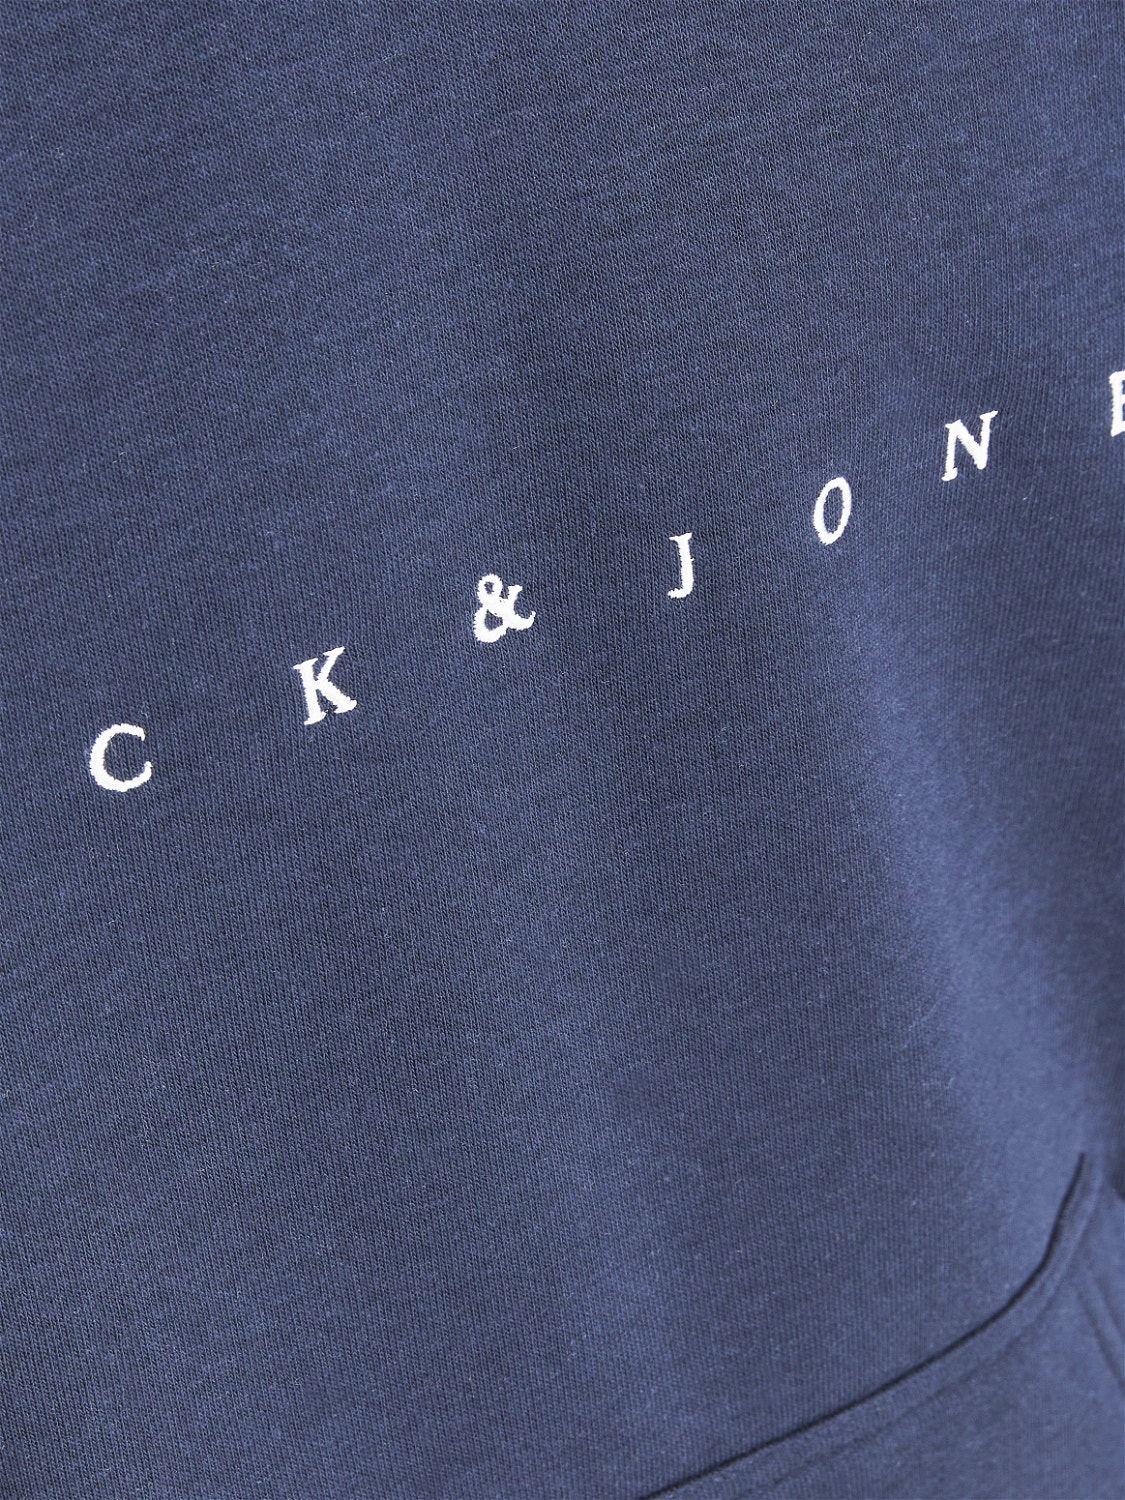 Jack & Jones Logo Hoodie Junior -Navy Blazer - 12214983